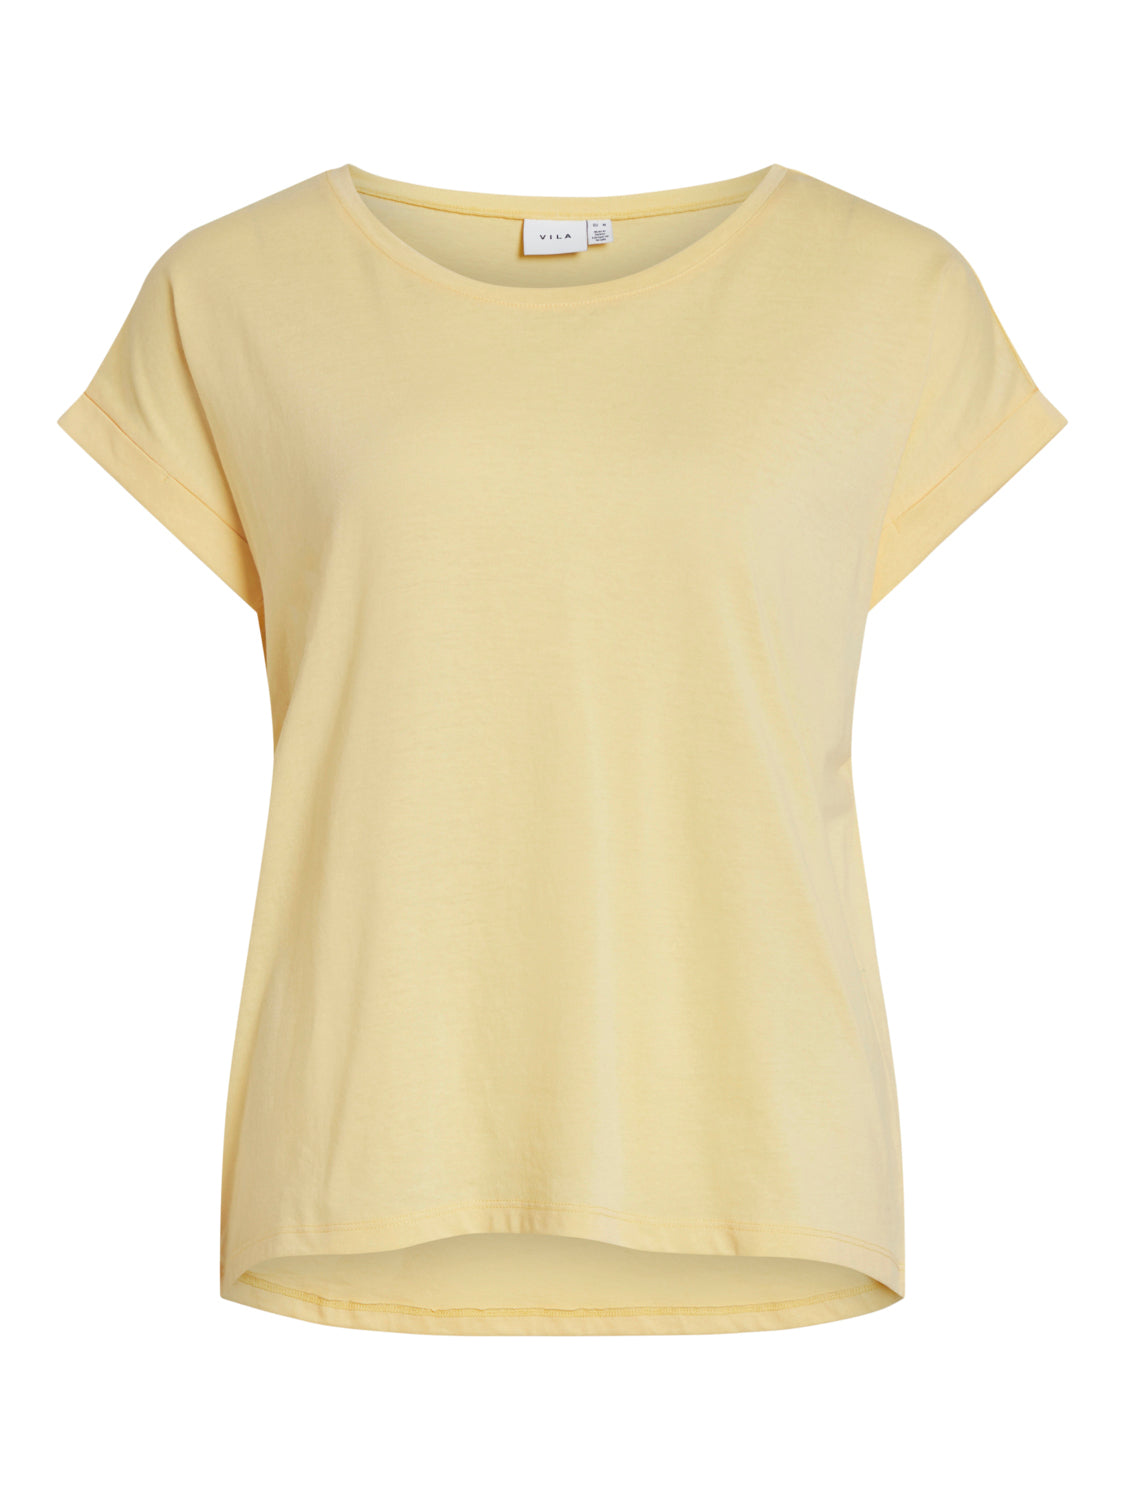 VIDREAMERS T-Shirts & Tops - Golden Haze